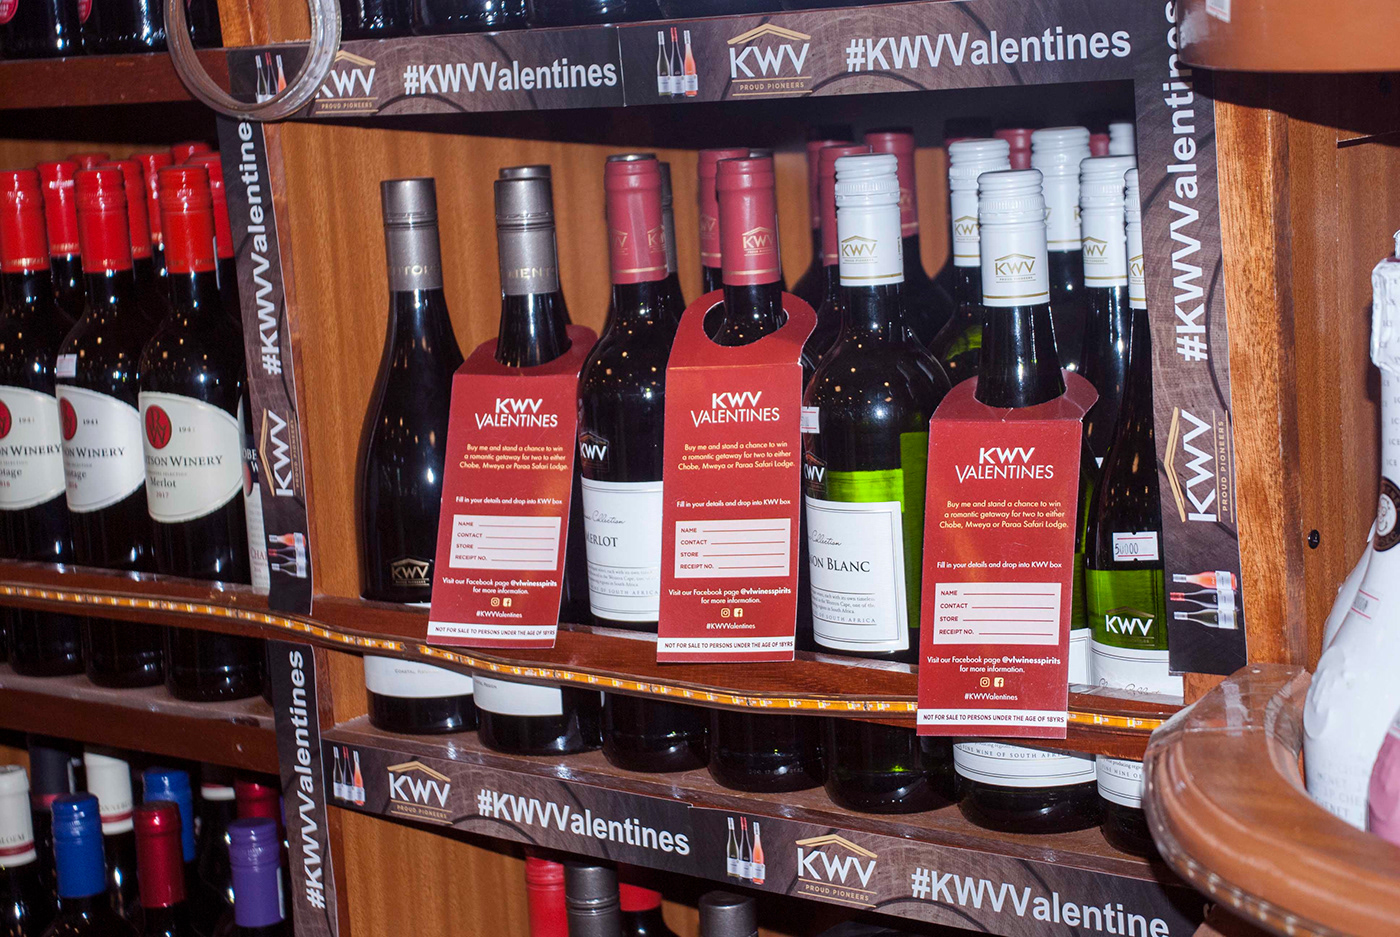 KWV wine Uganda game south africa Valentine's Day social media campaign